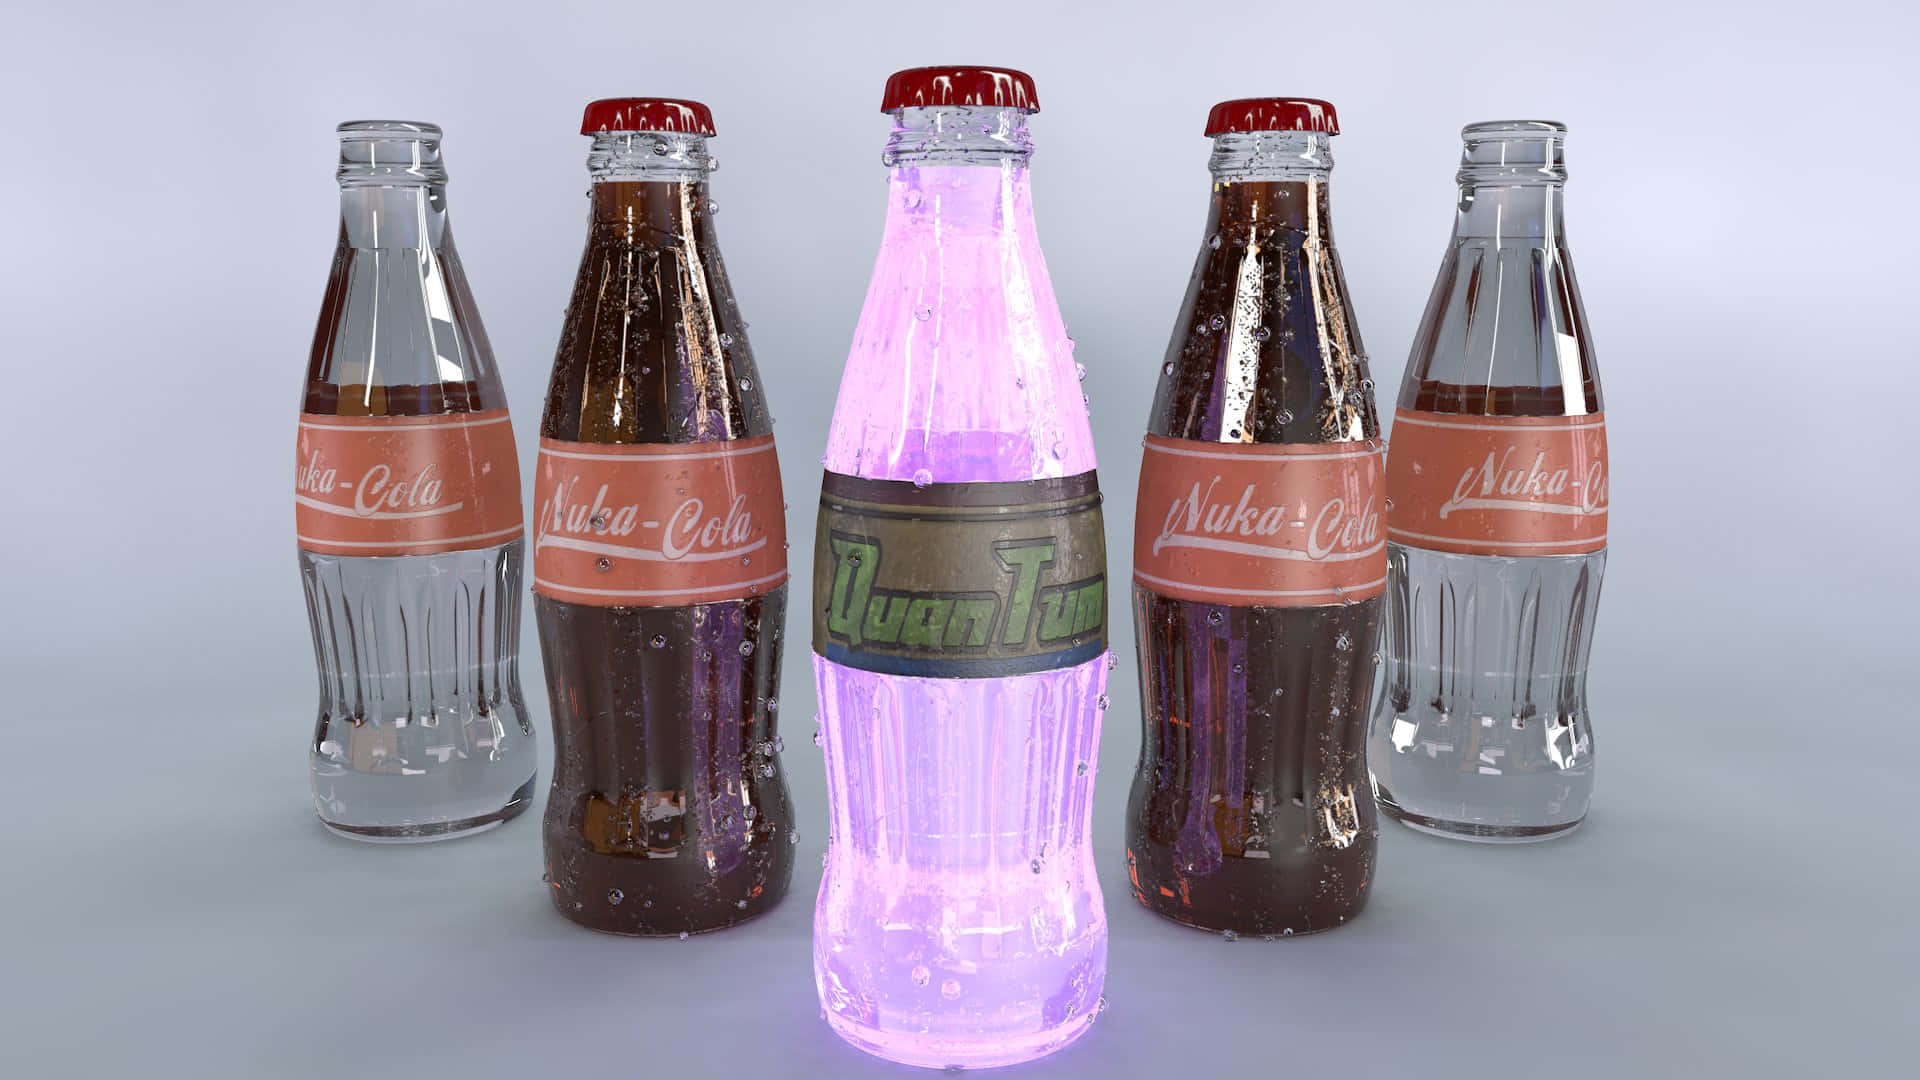 Cocacola-flaska I 3d-modell. Wallpaper